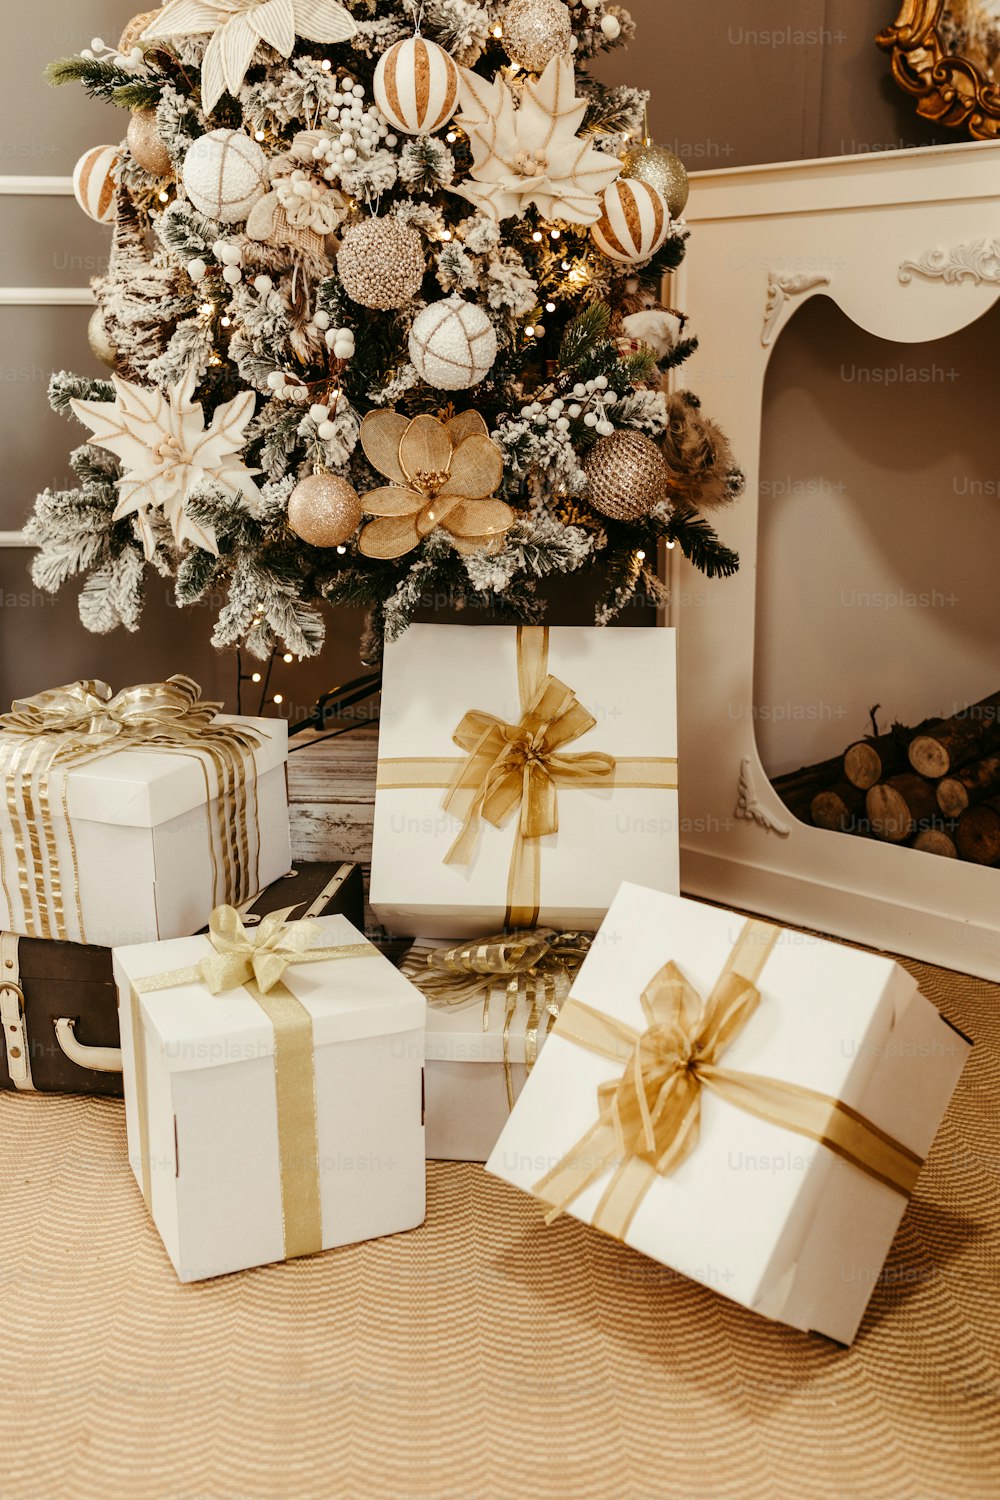 ein Weihnachtsbaum mit Geschenken darunter neben einem Kamin